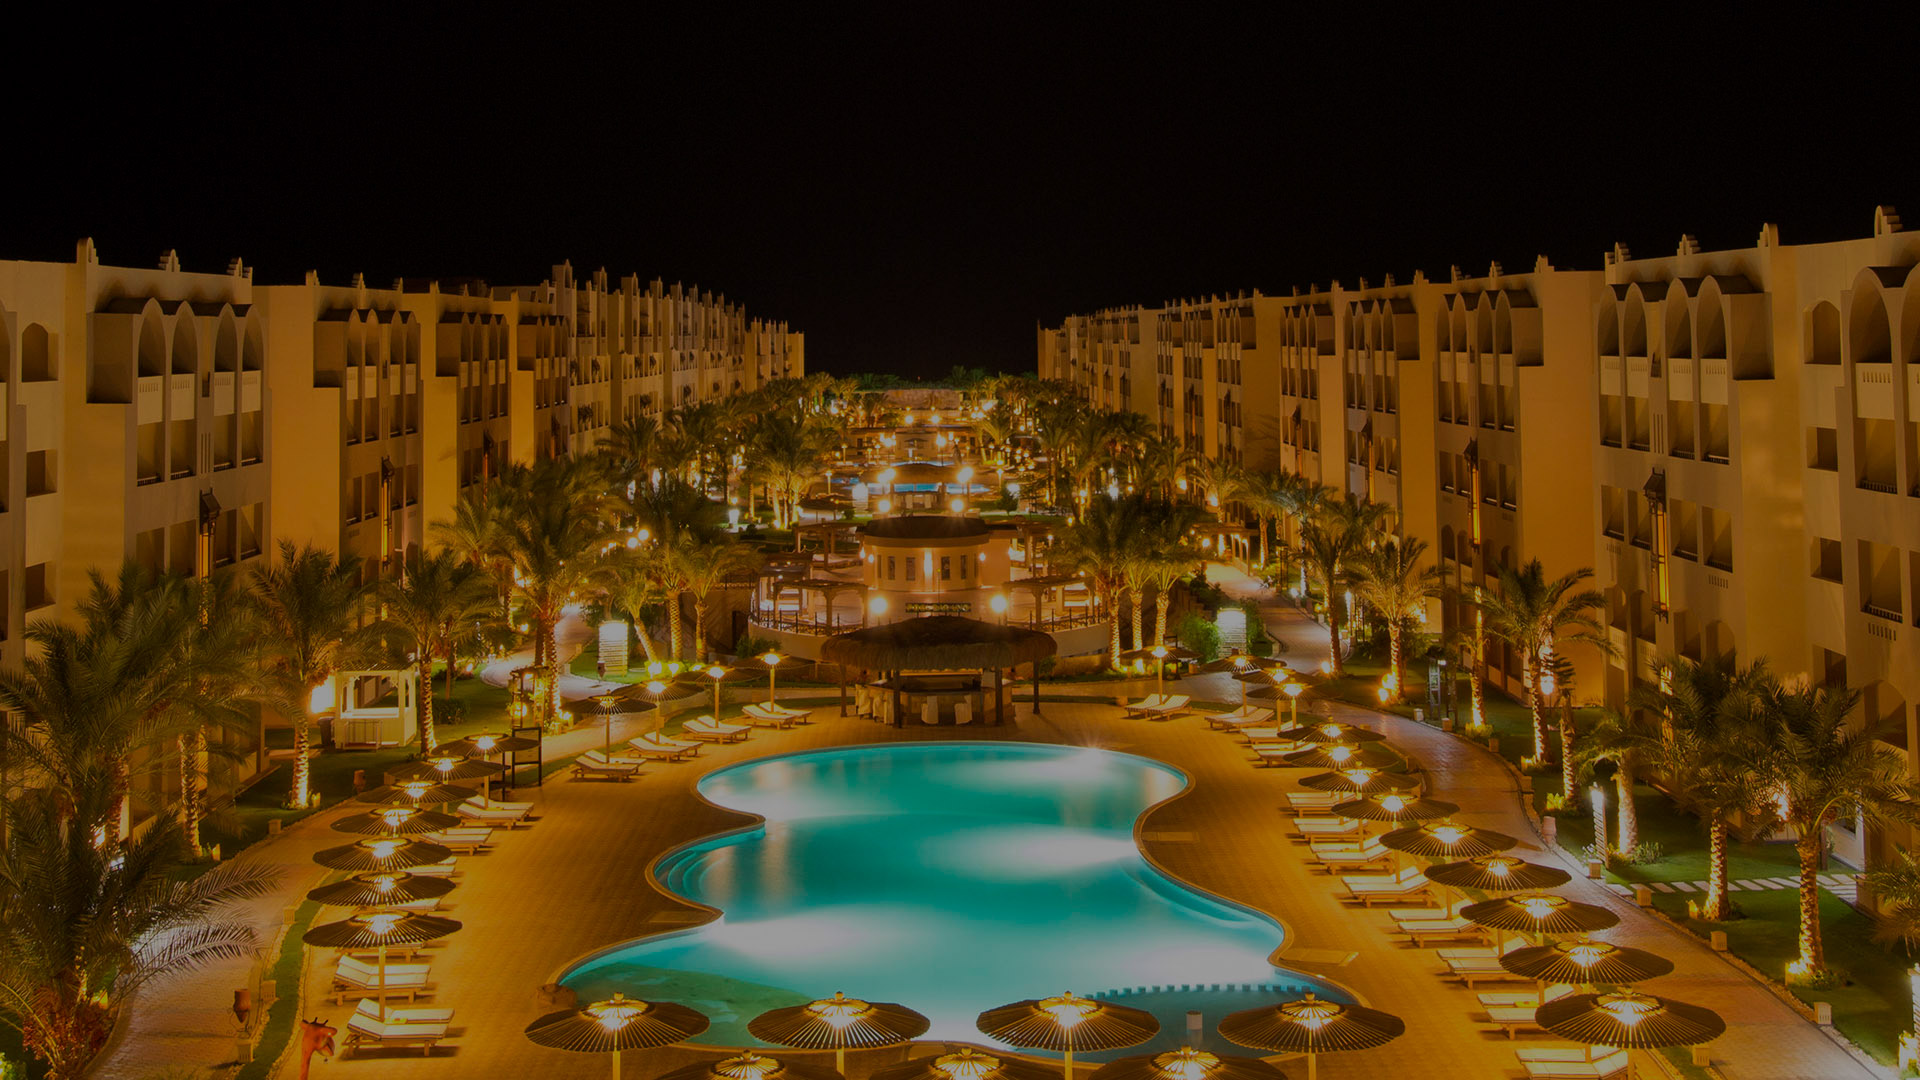 ارخص سعر لحجز فندق نوبيا اكوا بيتش الغردقة - بالانتقالات 2022 | Nubia Beach Resort & Aqua Park